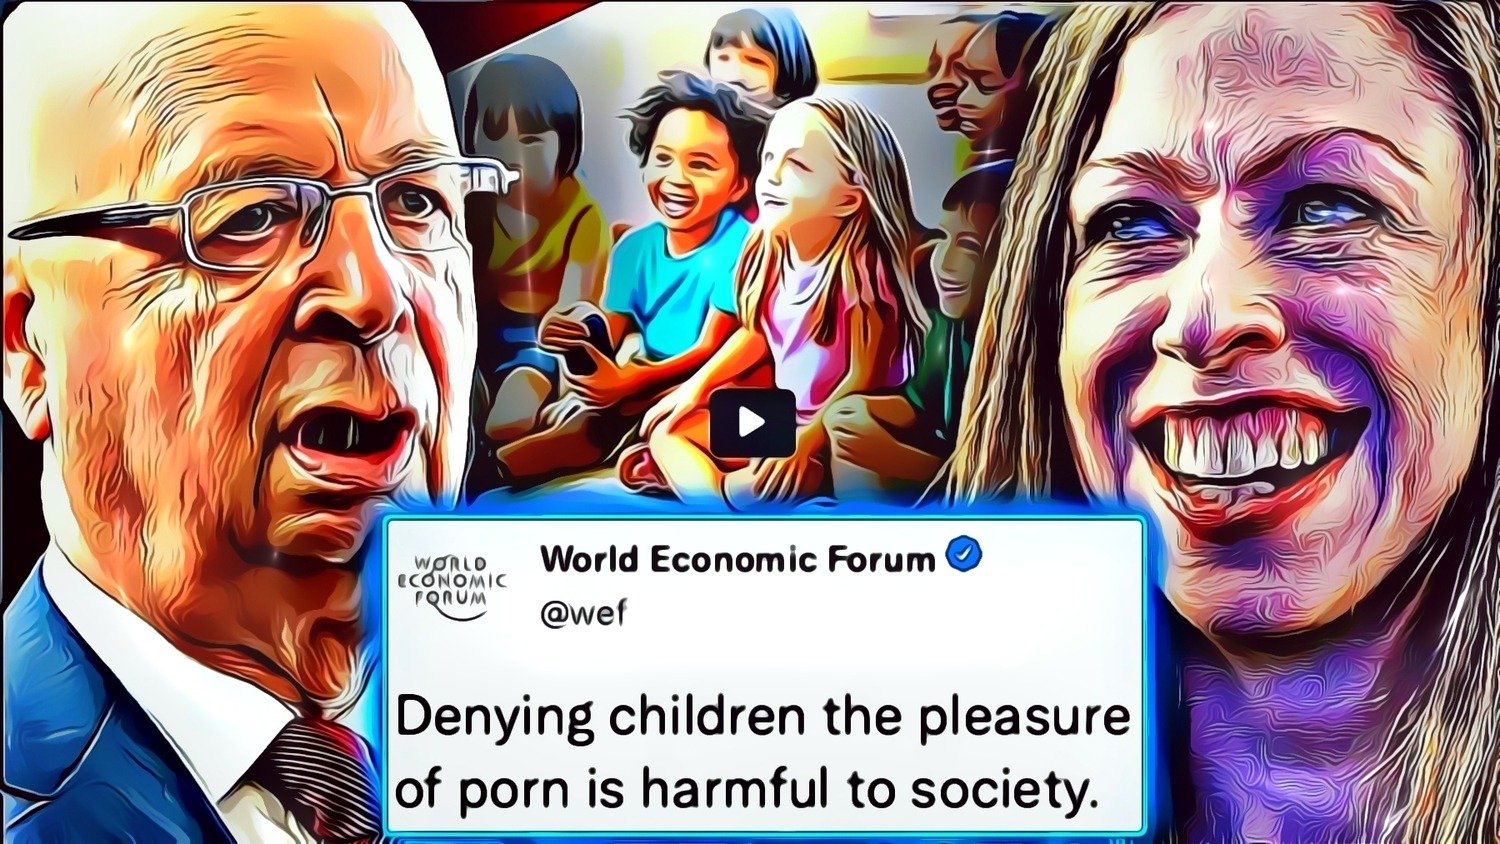 WEF määrää koulut pakottamaan lapset katsomaan kovaa pornoa “omaksi parhaakseen